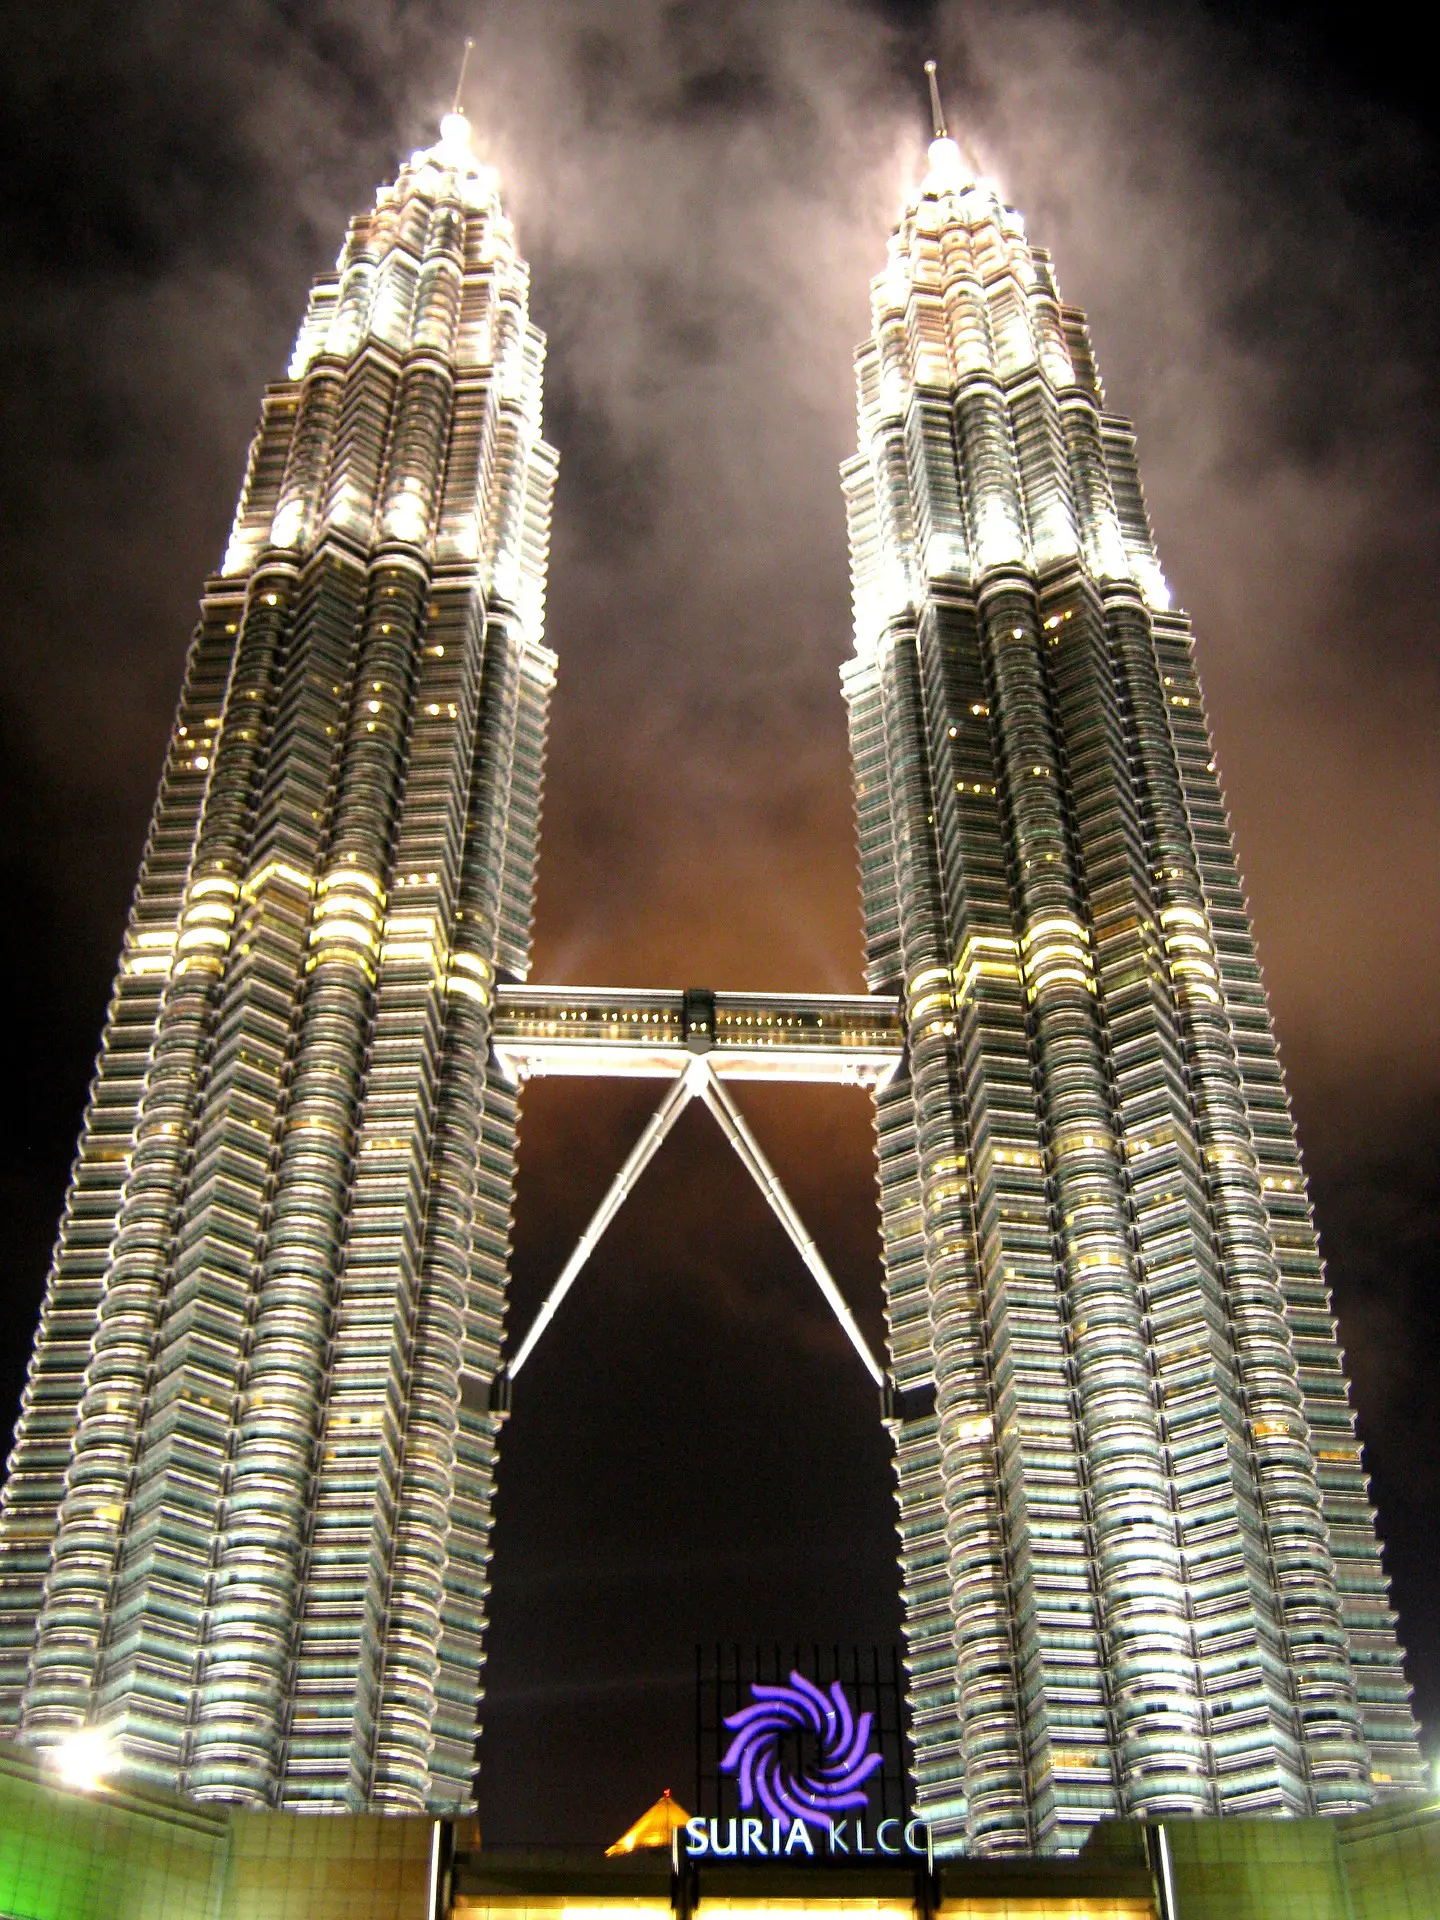 Petronas Towers Malaysia